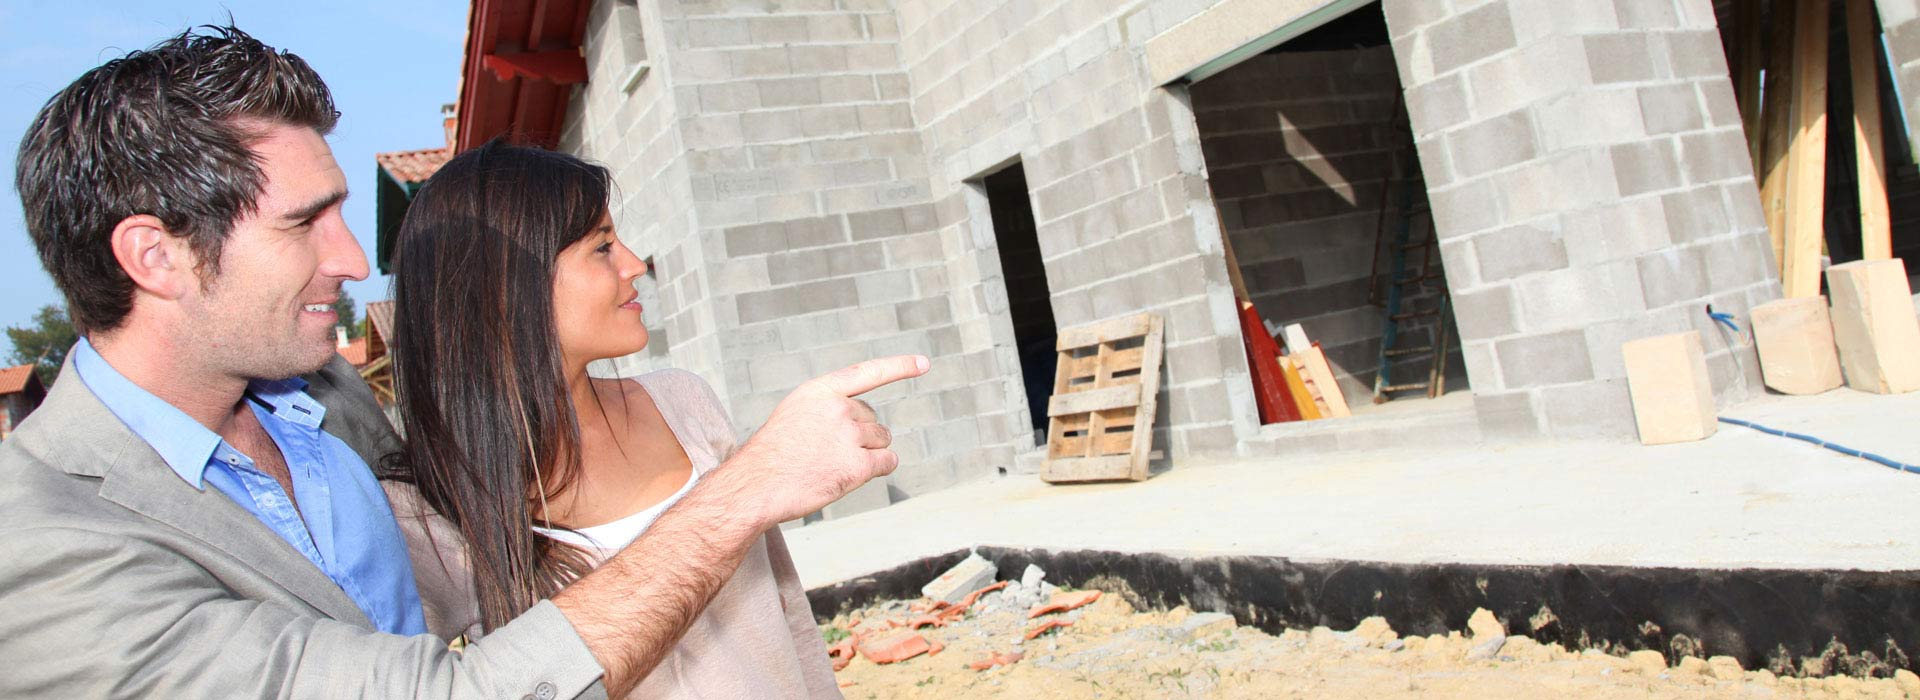 Bau Dein Haus – der Hausbauworkshop mit Baumeister Uwe Franzke